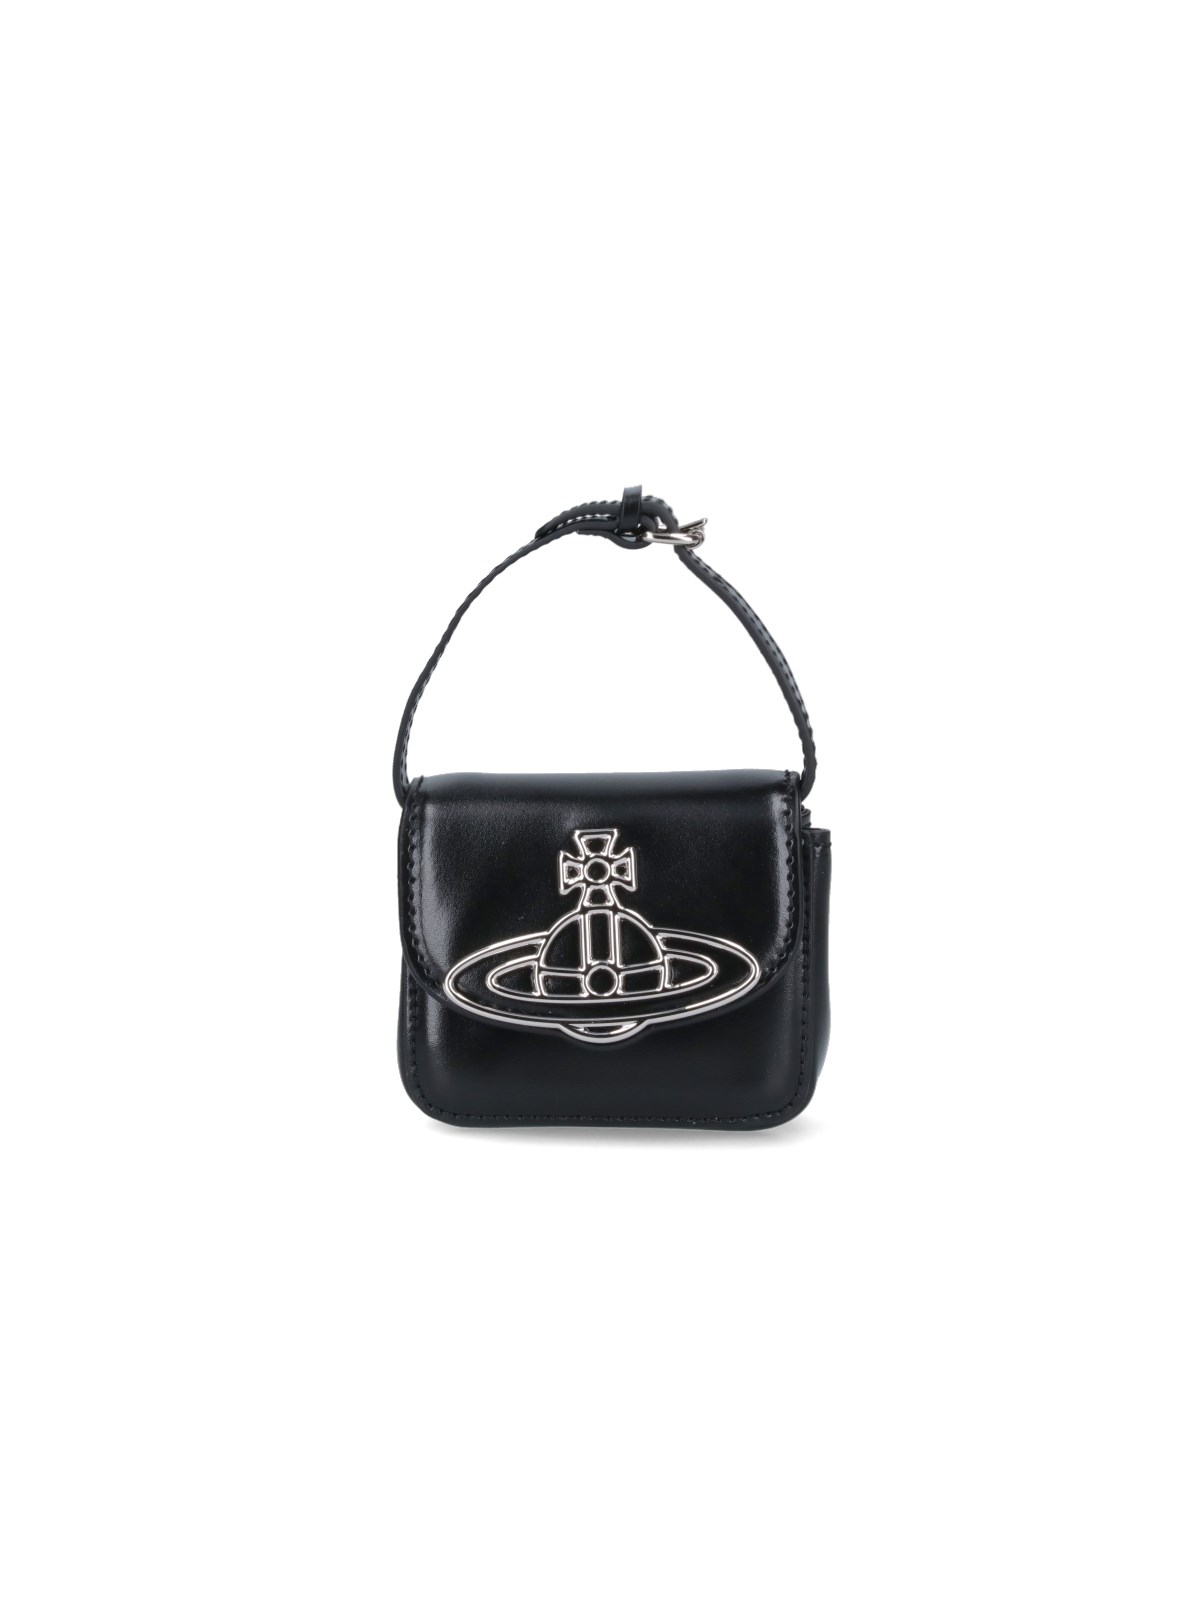 Vivienne Westwood "linda" Mini Bag In Black  